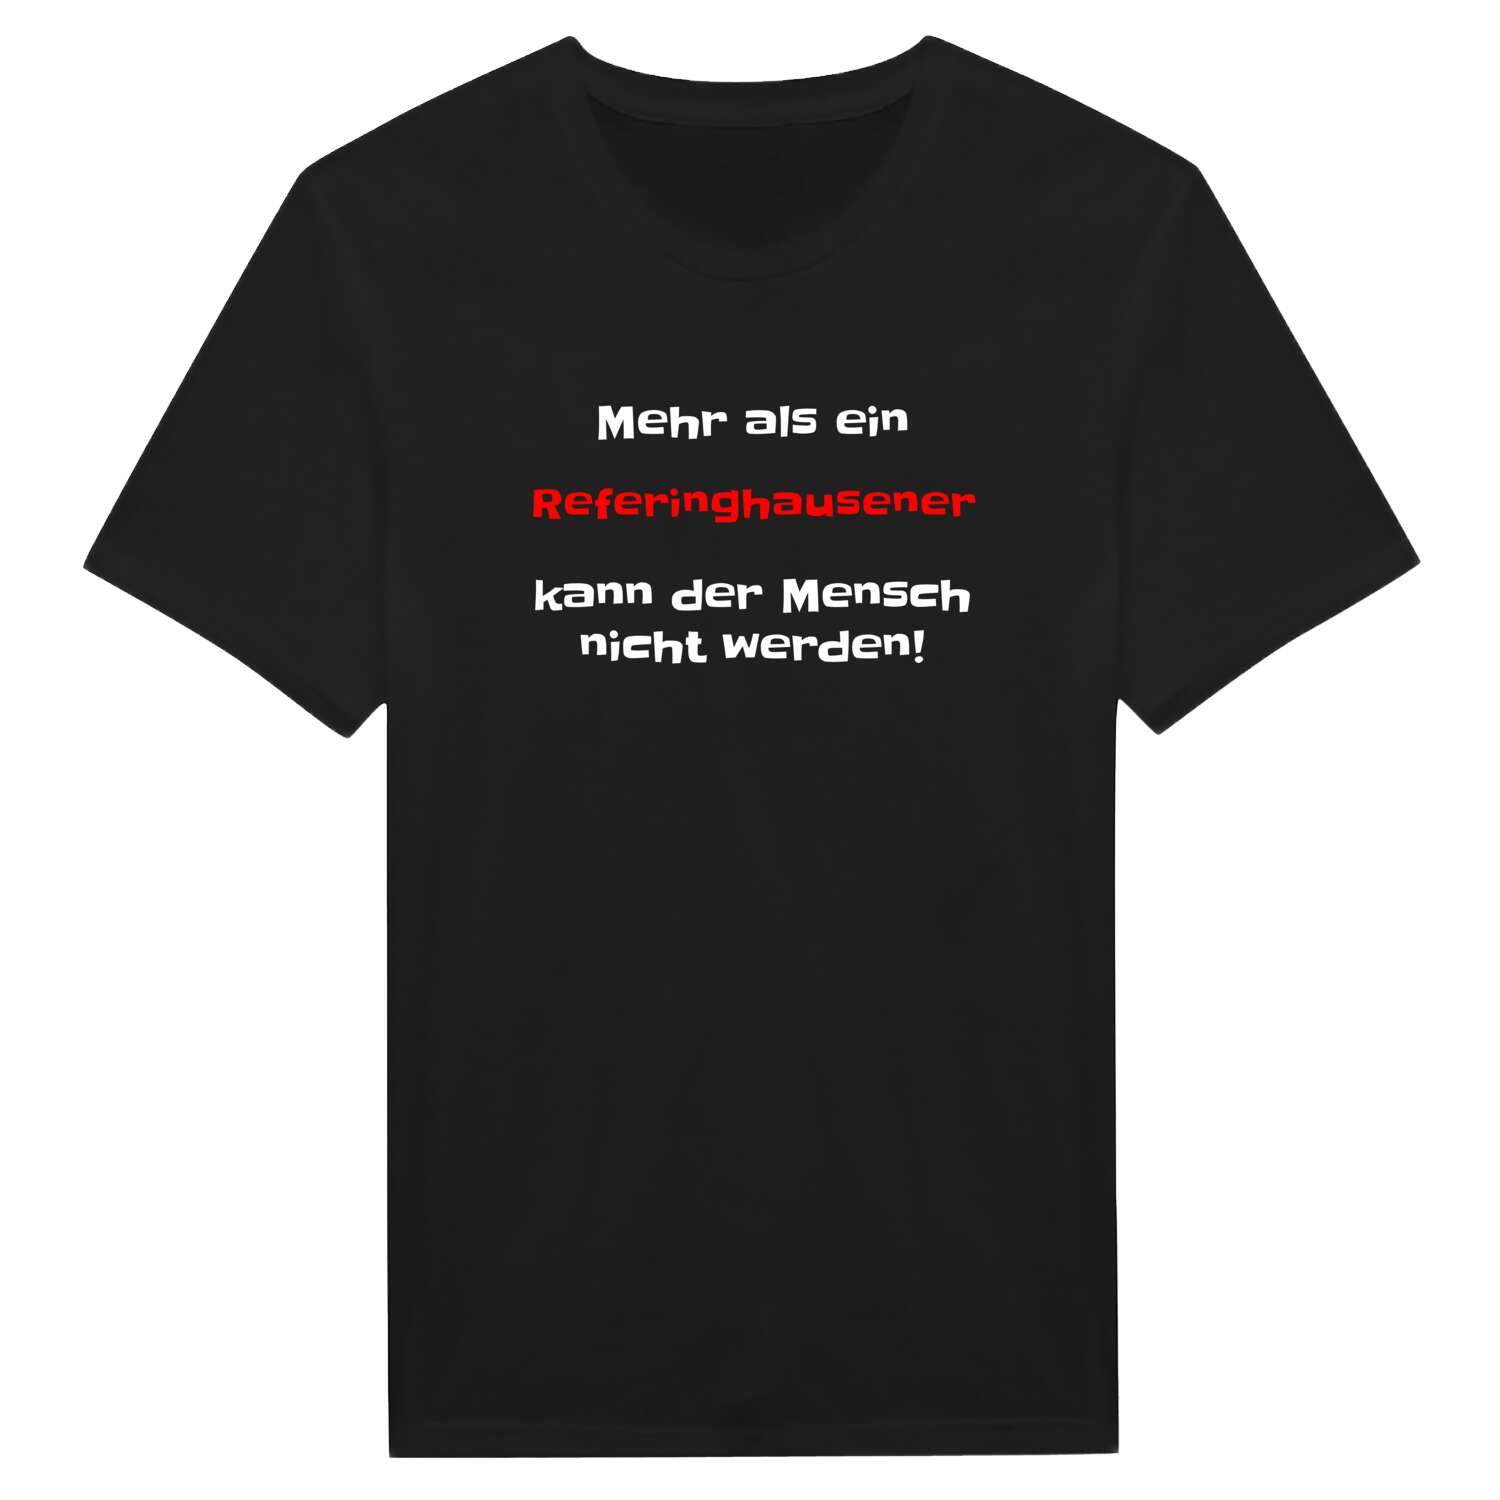 Referinghausen T-Shirt »Mehr als ein«